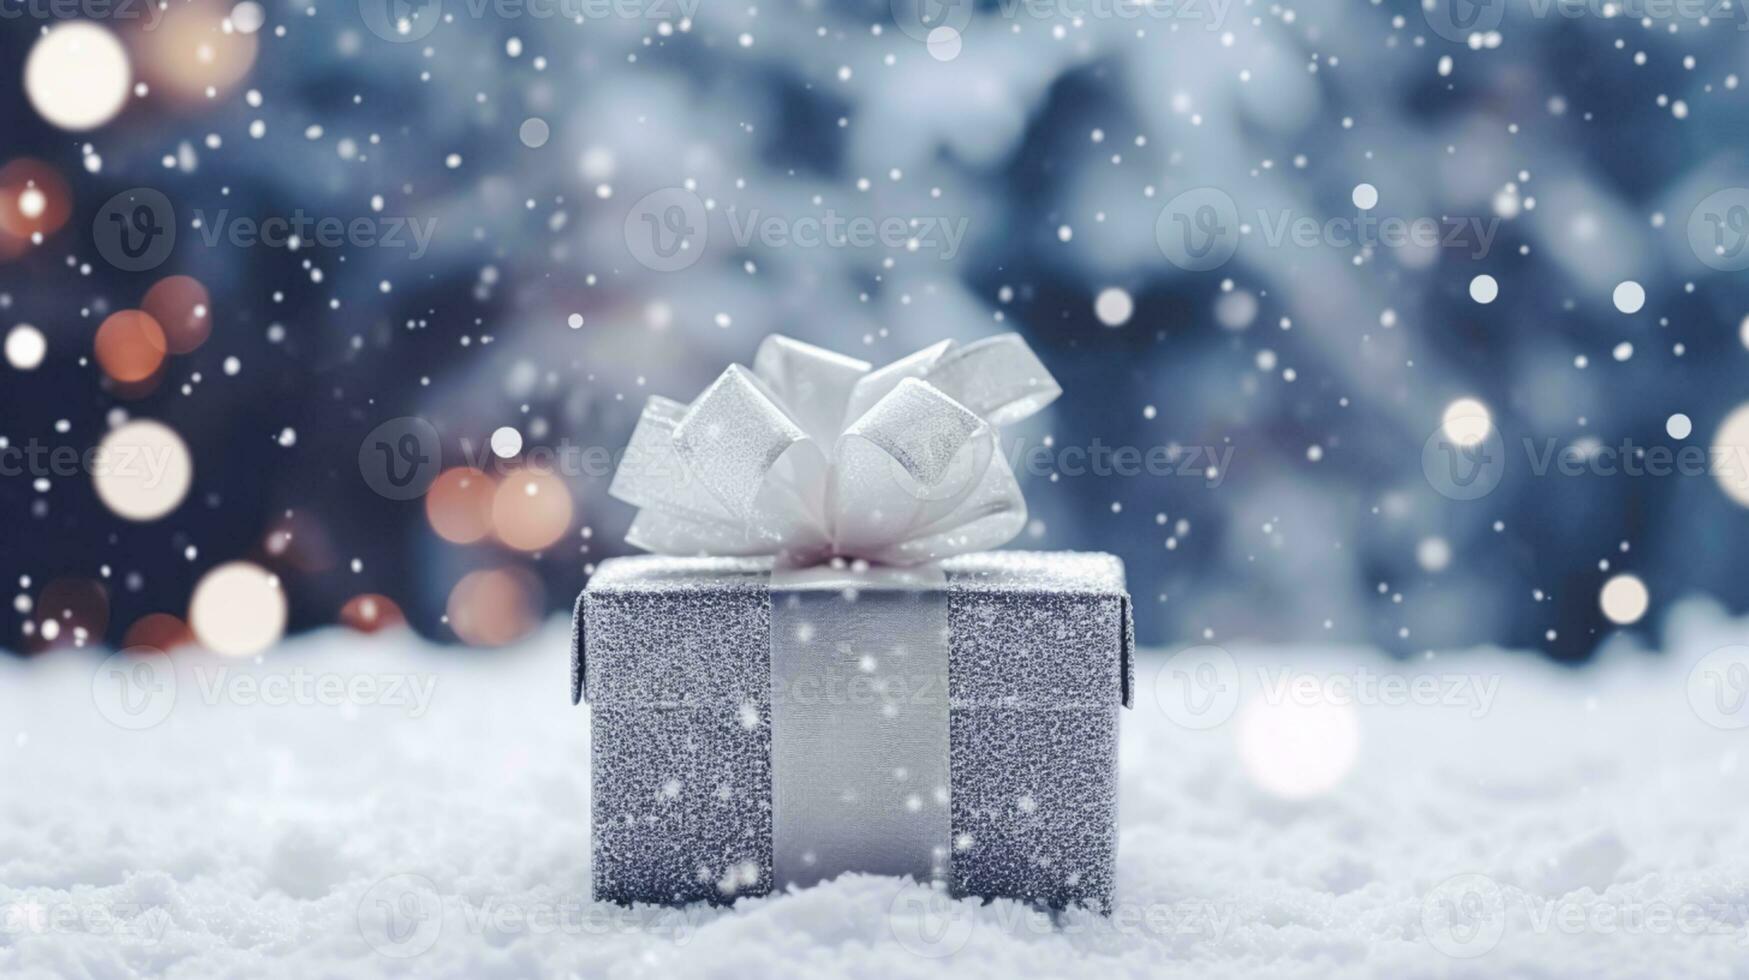 jul Semester gåva och närvarande, gåva låda i de snö i snöfall vinter- landsbygden natur för boxning dag, högtider handla försäljning foto